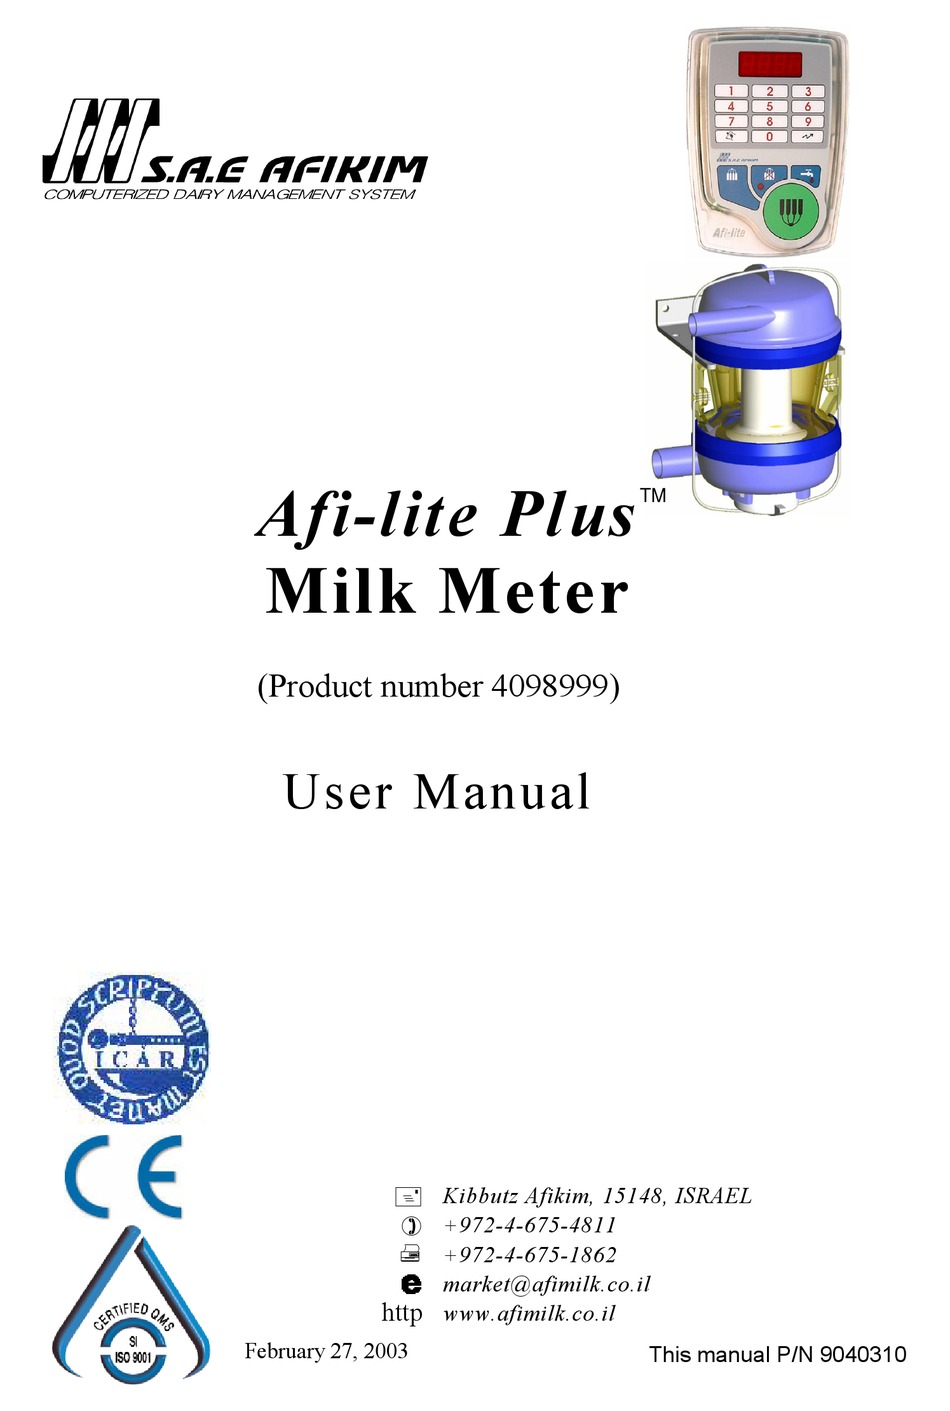 AFIKIM AFILITE PLUS USER MANUAL Pdf Download ManualsLib